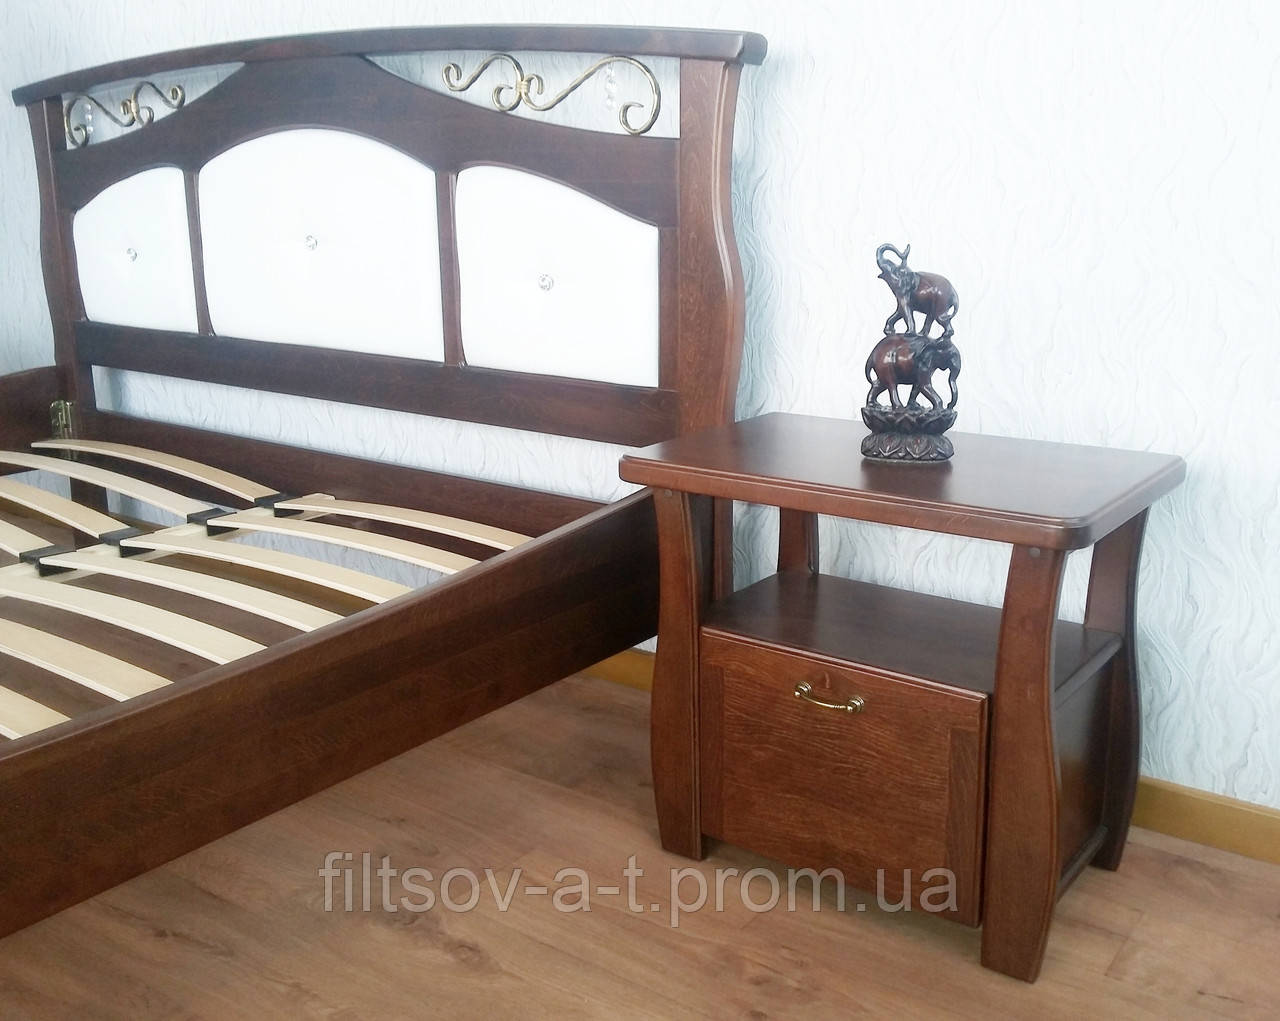 Тумбочка приліжкова для спальні з натурального дерева "Грета Вульф" від виробника